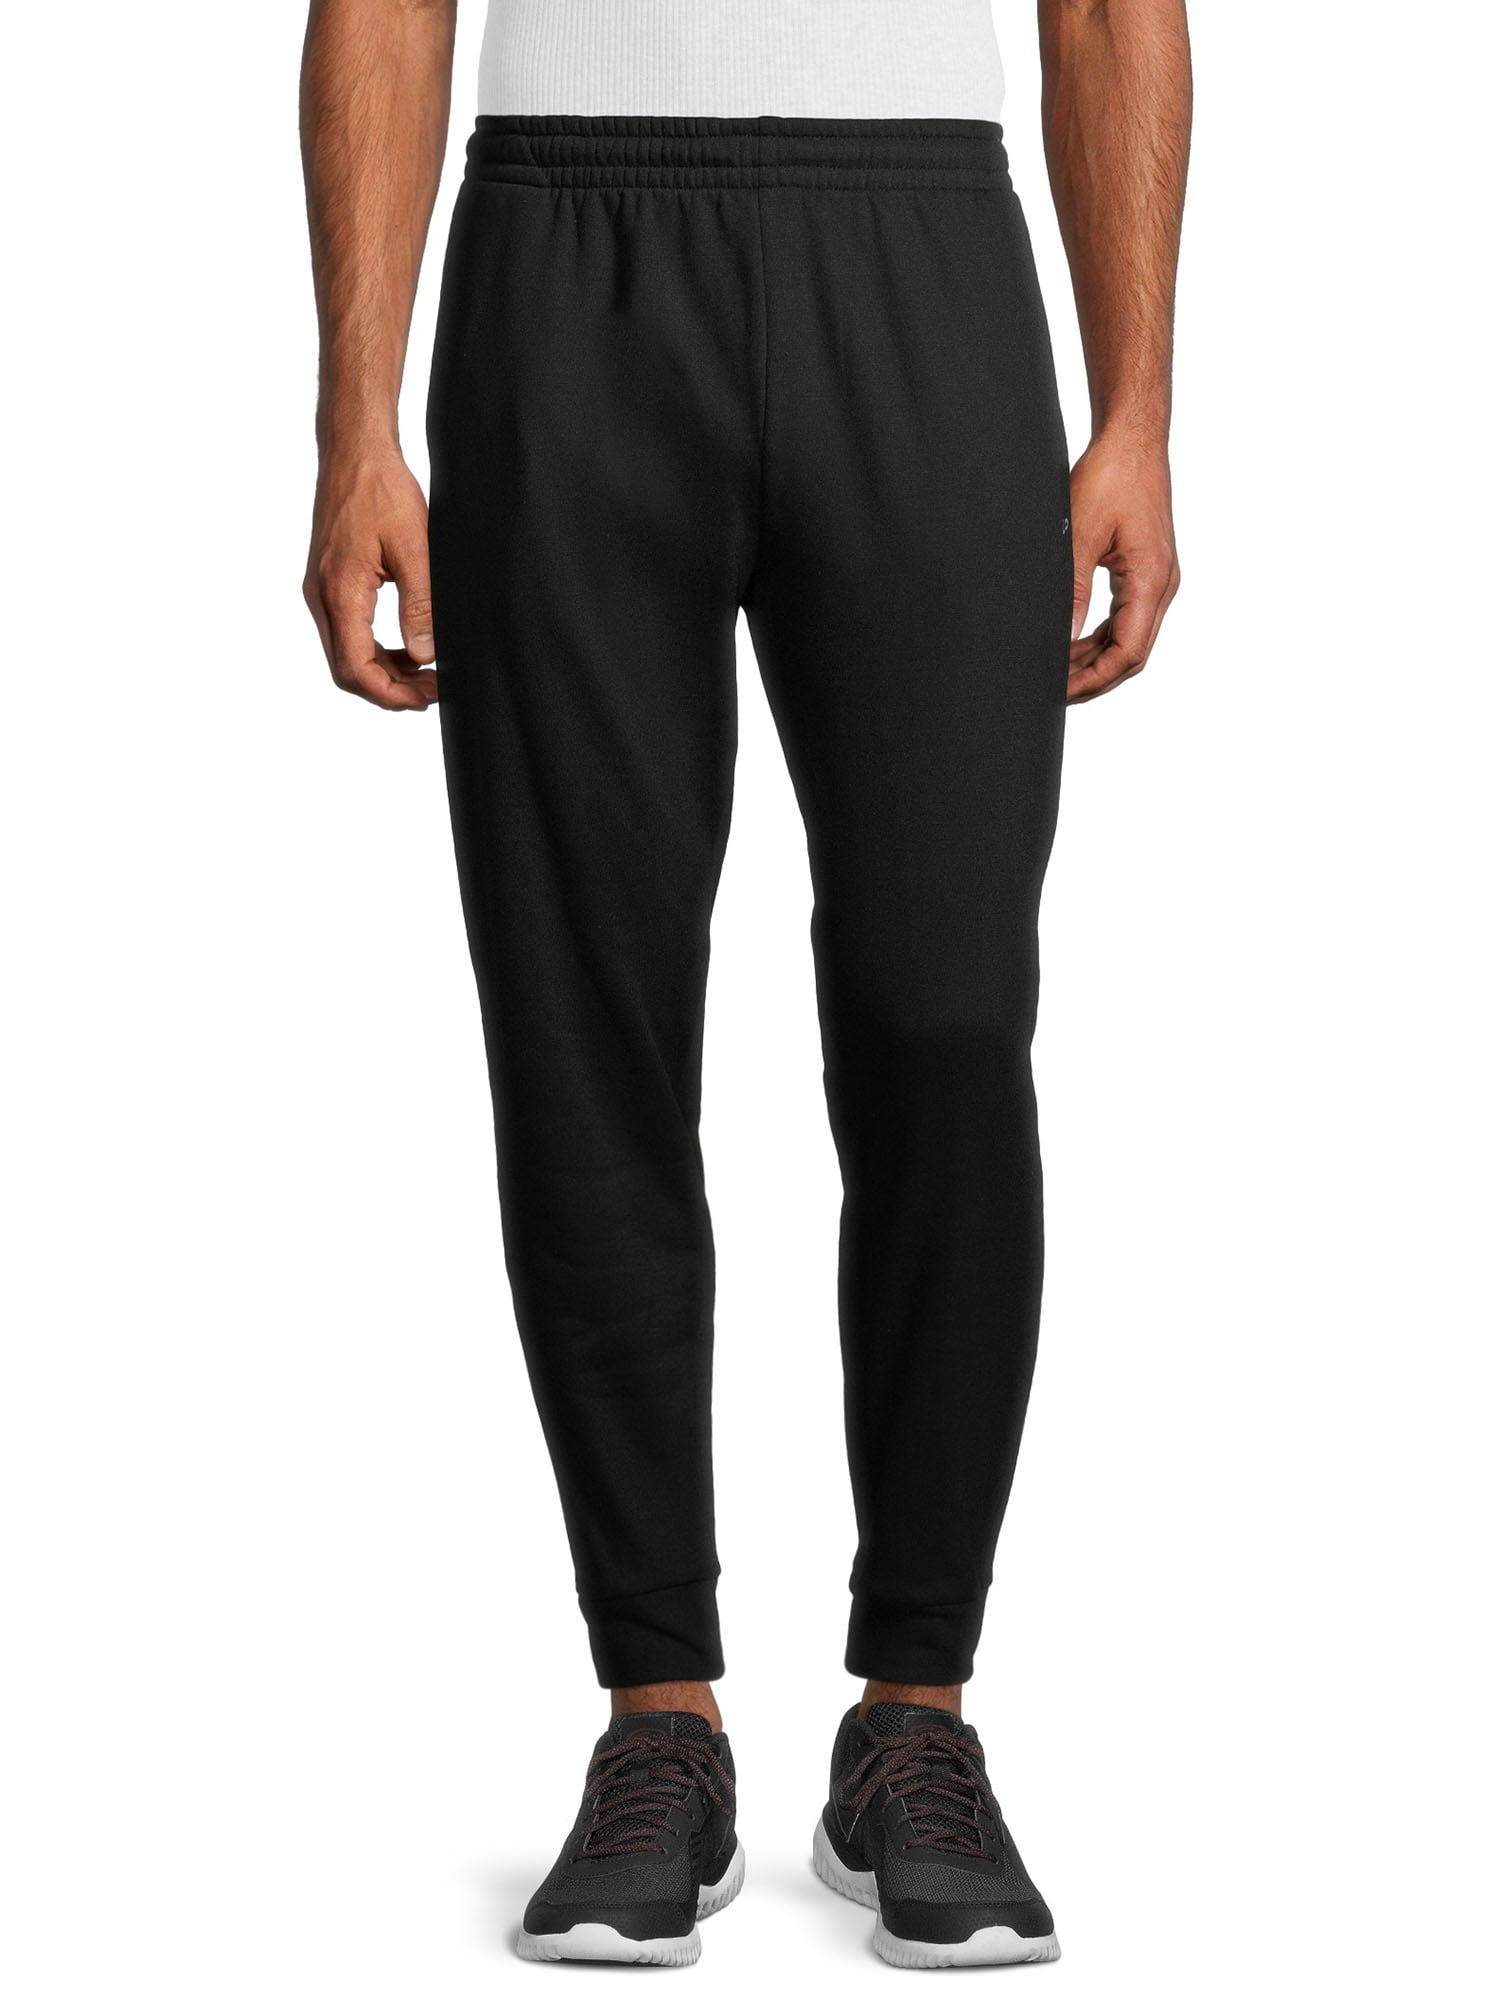 Unipro Men's Fleece Solid Sweatpants - Walmart.com